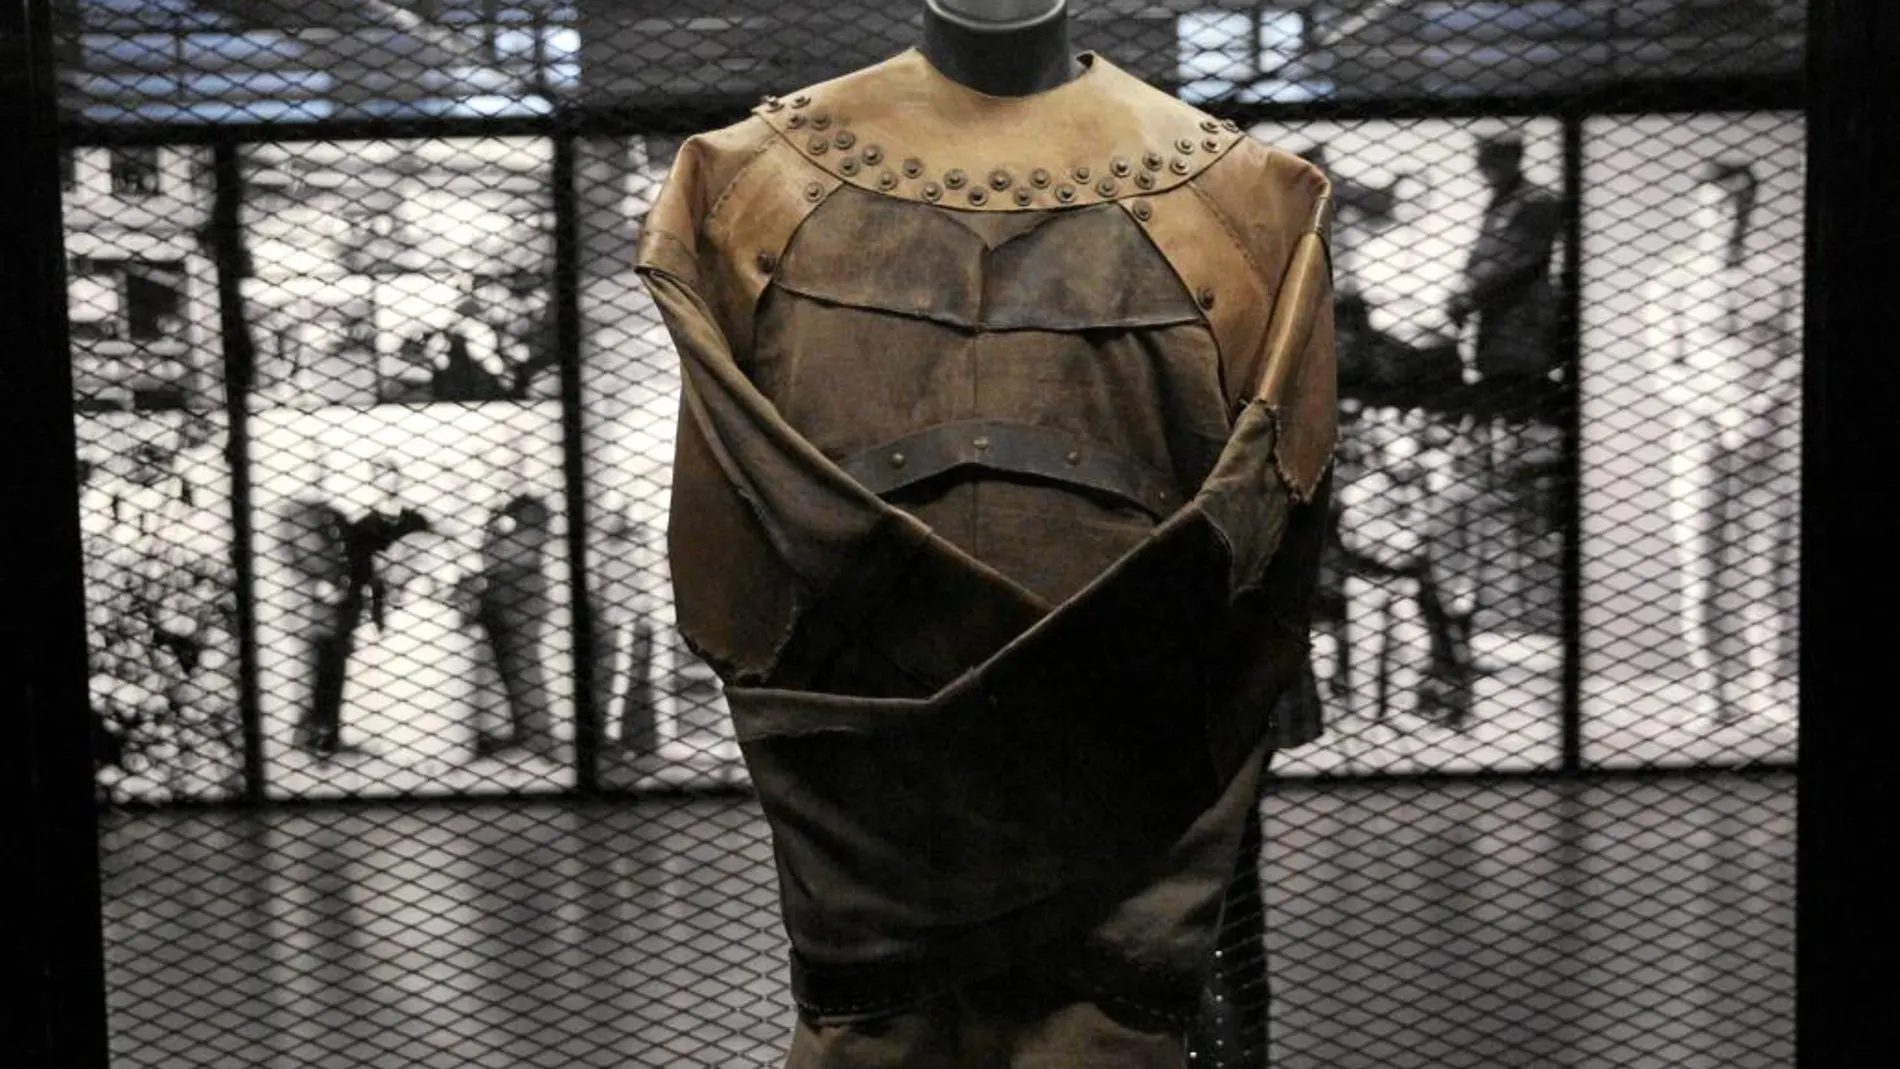 La exposición ha reproducido una camisa de fuerza idéntica a la que utilizó Houdini en sus números